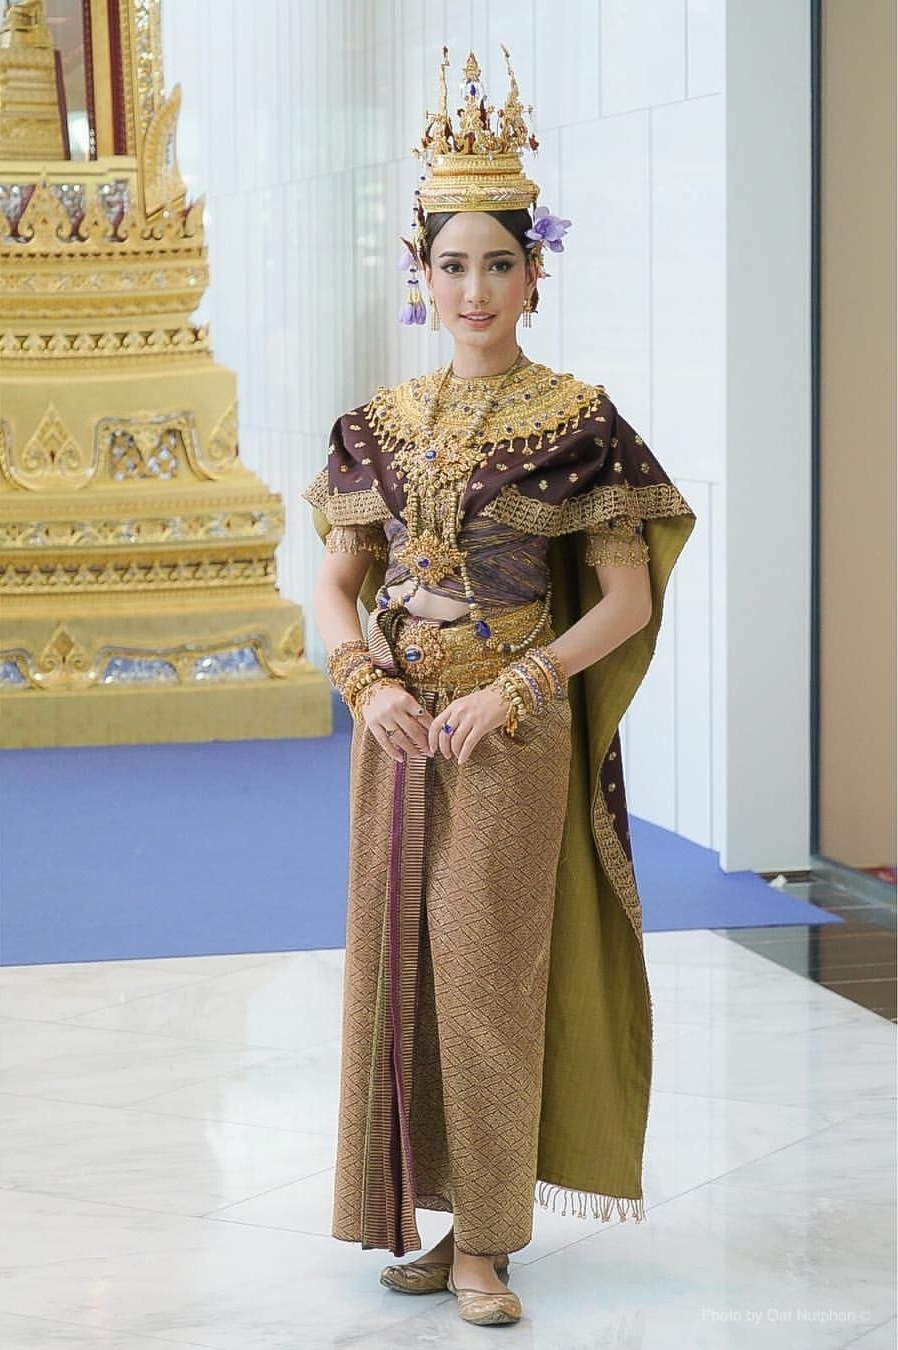 Loạt mỹ nhân Thái trong trang phục truyền thống: Baifern, Mai Davika đẹp không góc chết